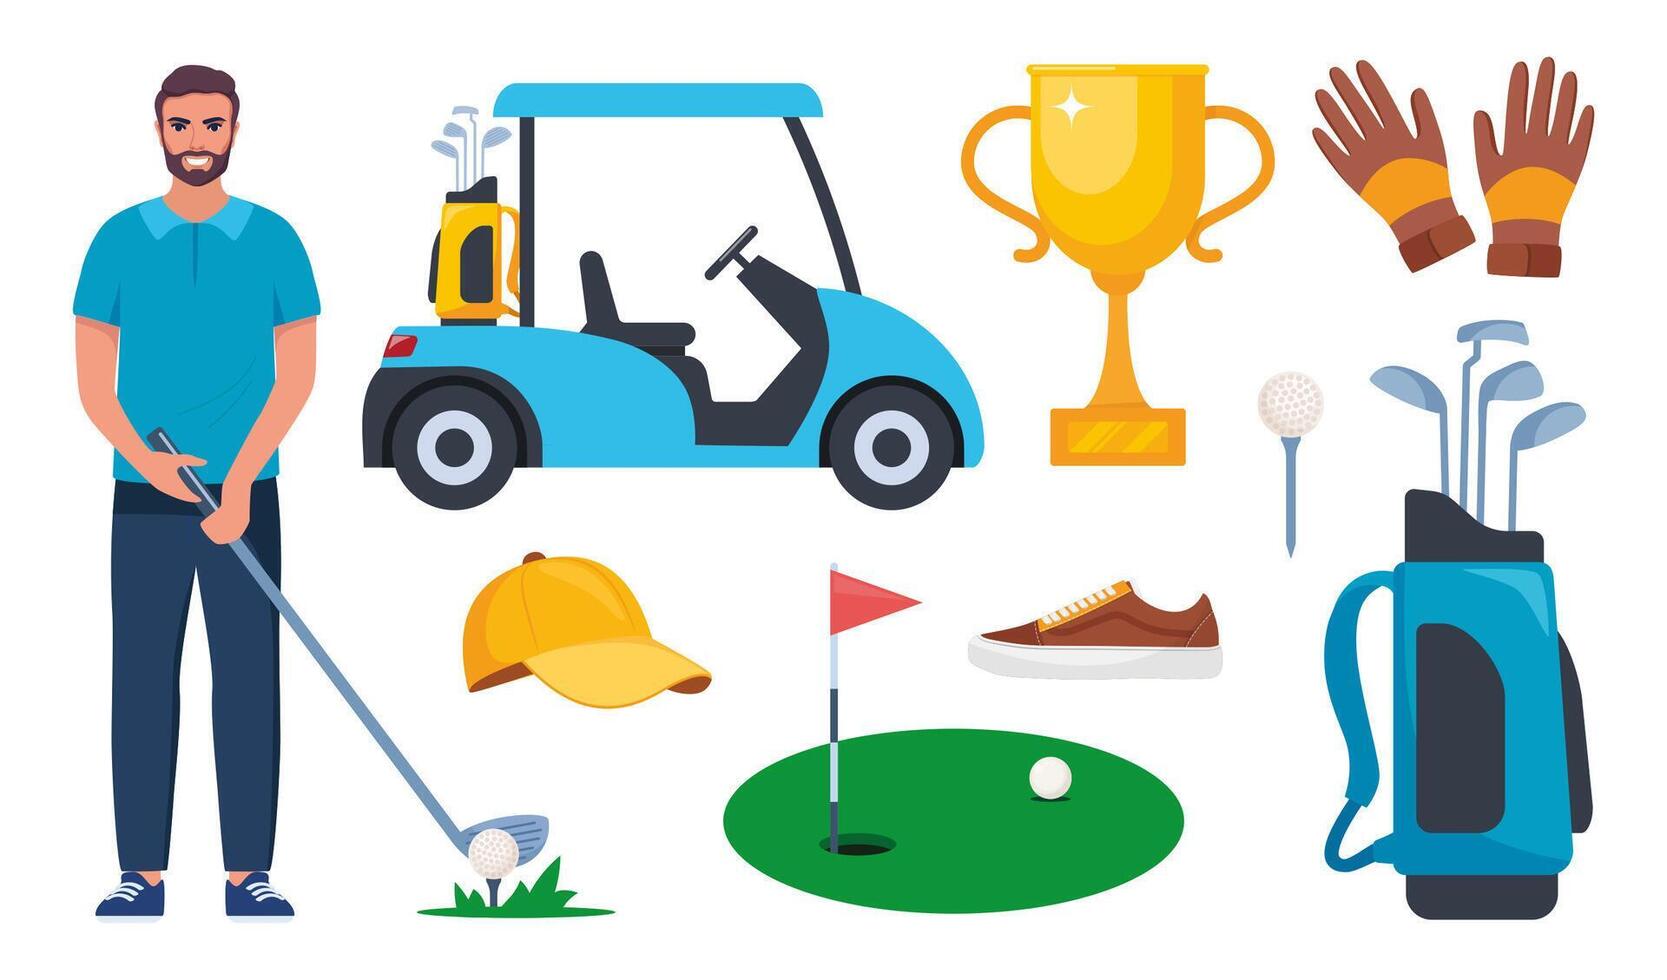 golfe equipamento definir. profissional Itens para jogar a esporte, roupas e acessórios. golfe jogador, bolsa, taco, jogador de golfe, bola, buraco, curso, luvas, camisa, xícara, carro. vetor ilustração.